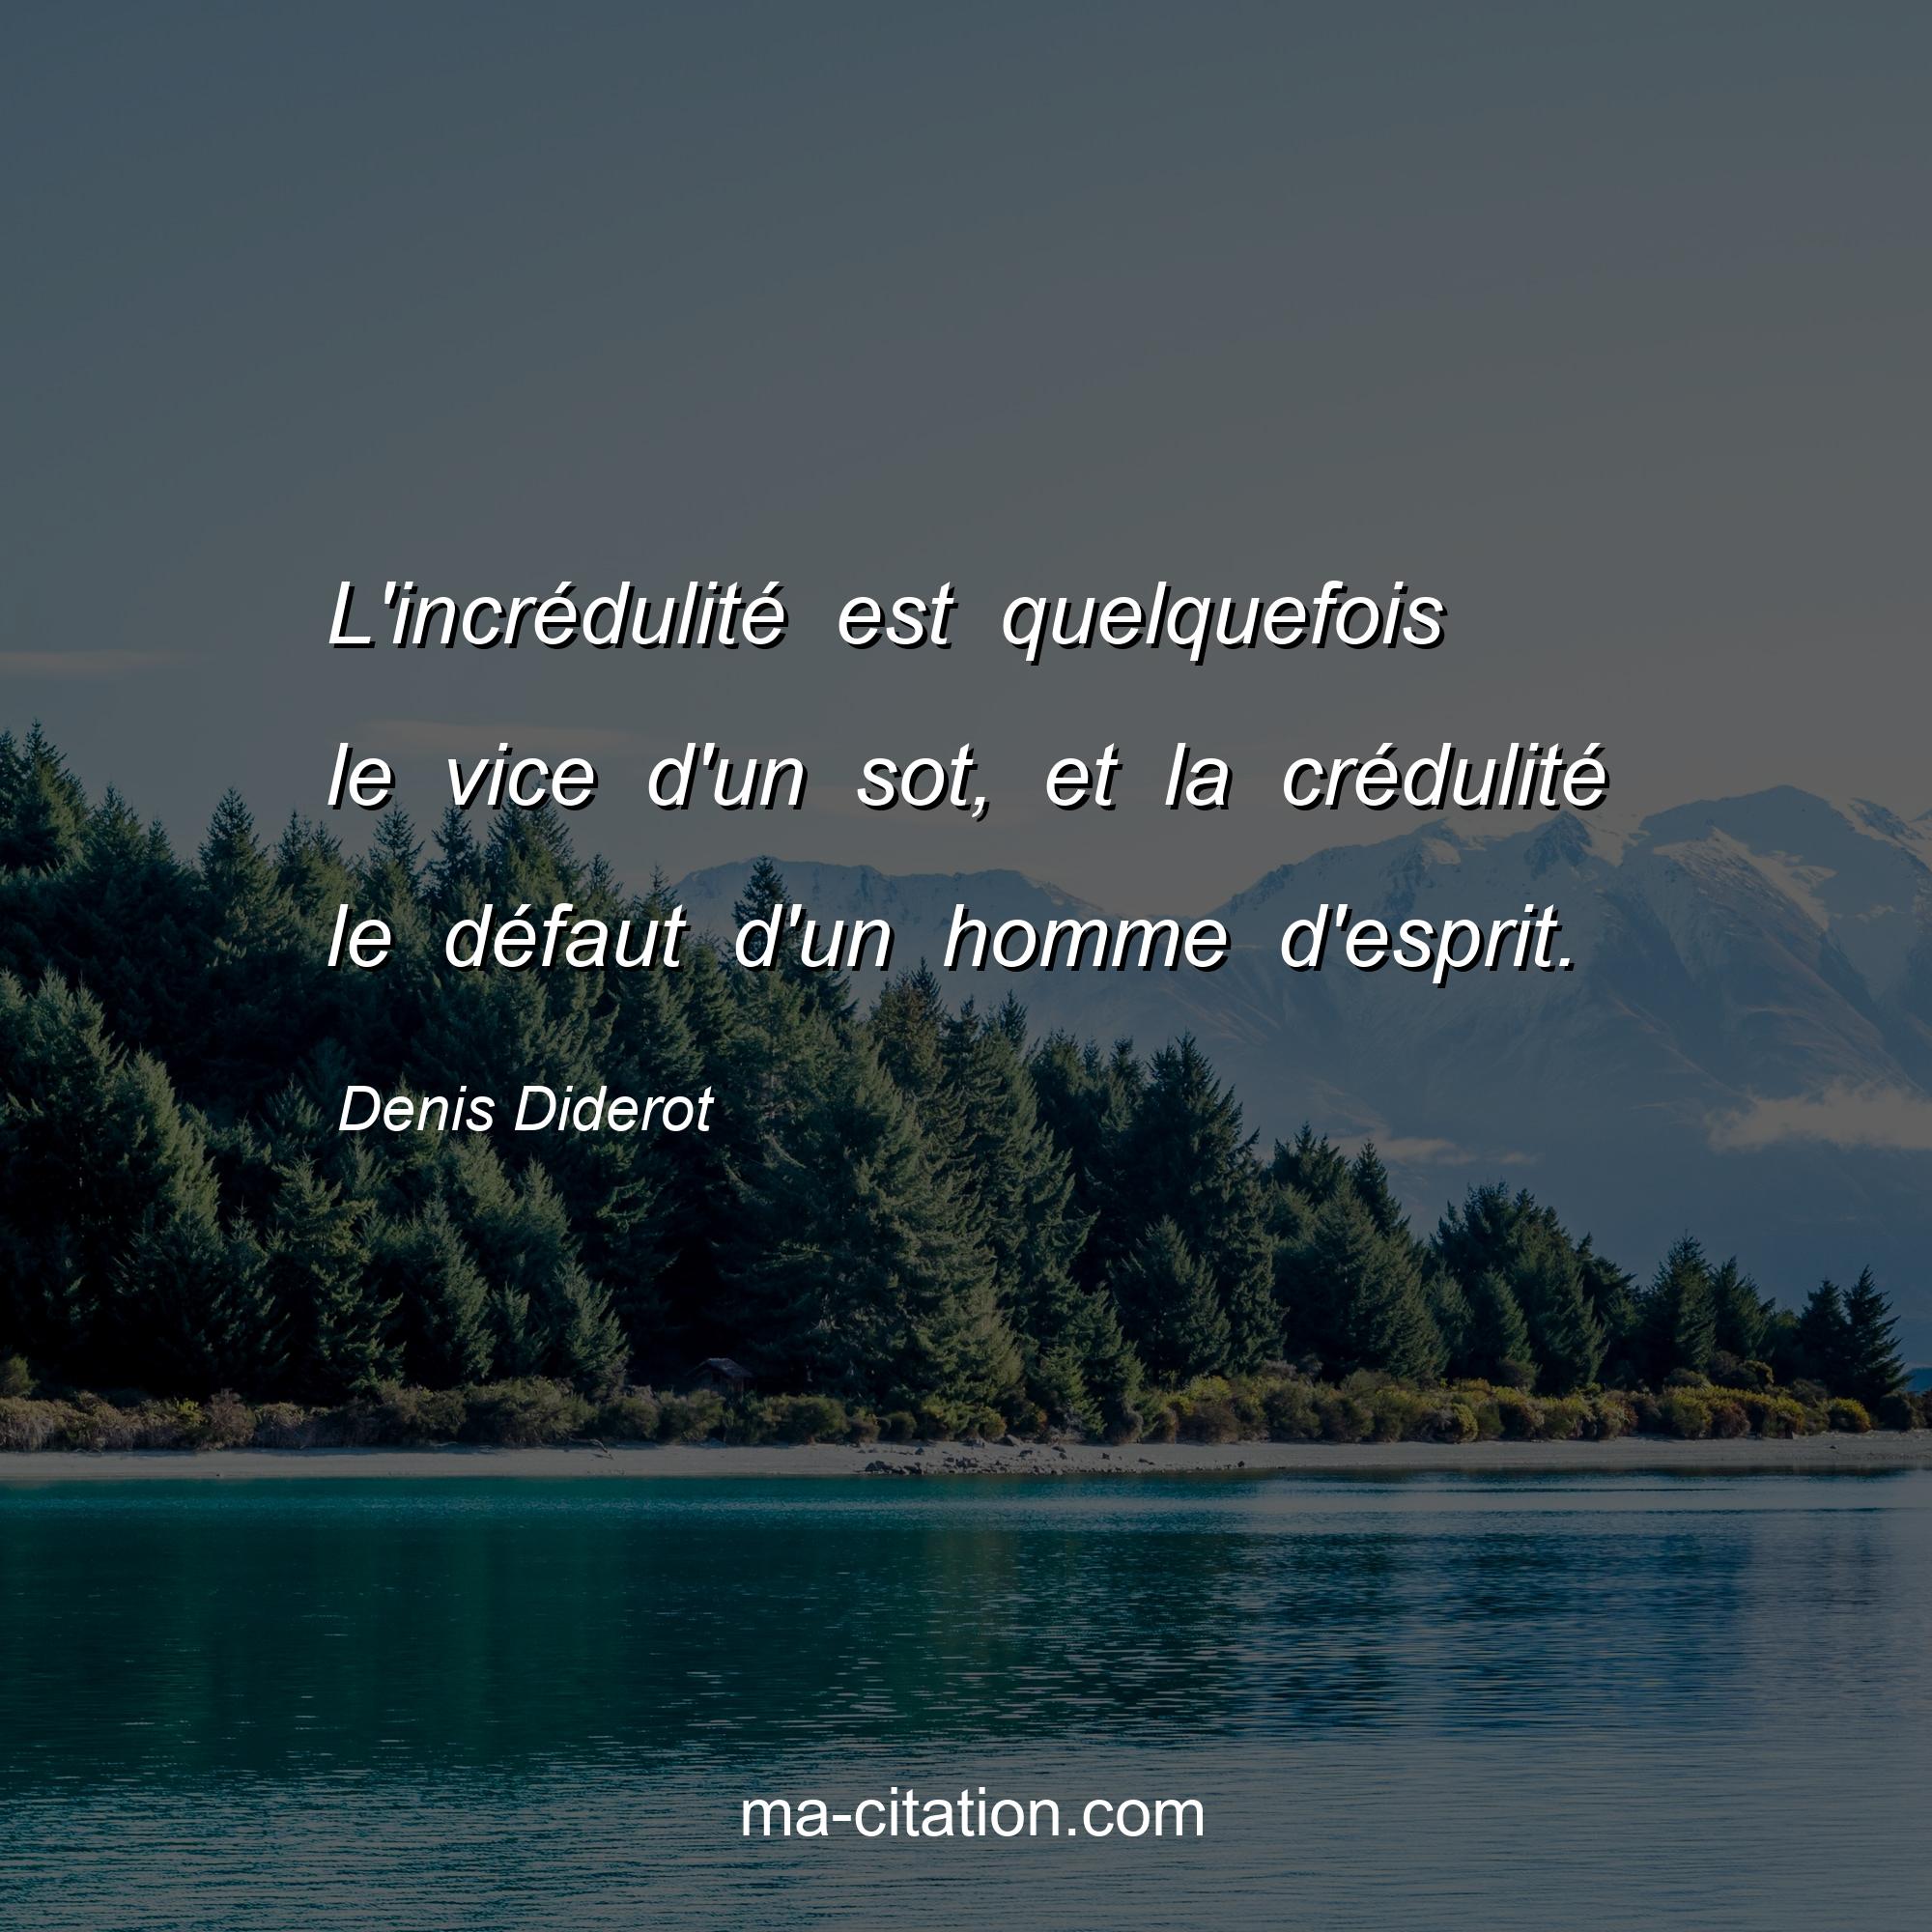 Denis Diderot : L'incrédulité est quelquefois le vice d'un sot, et la crédulité le défaut d'un homme d'esprit.